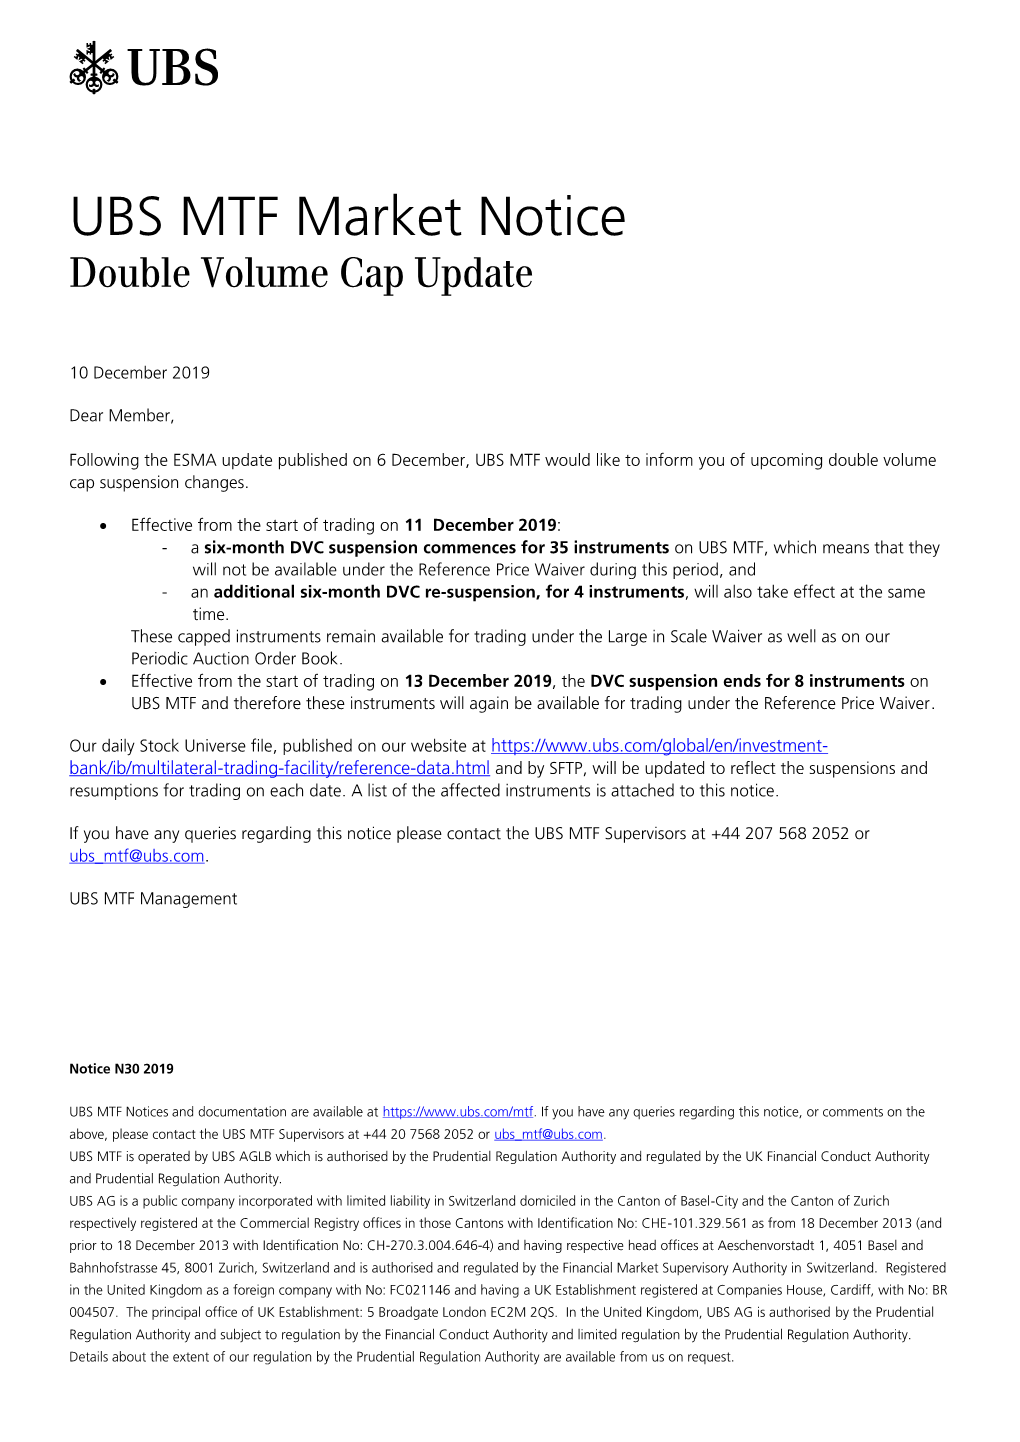 UBS MTF Market Notice Double Volume Cap Update